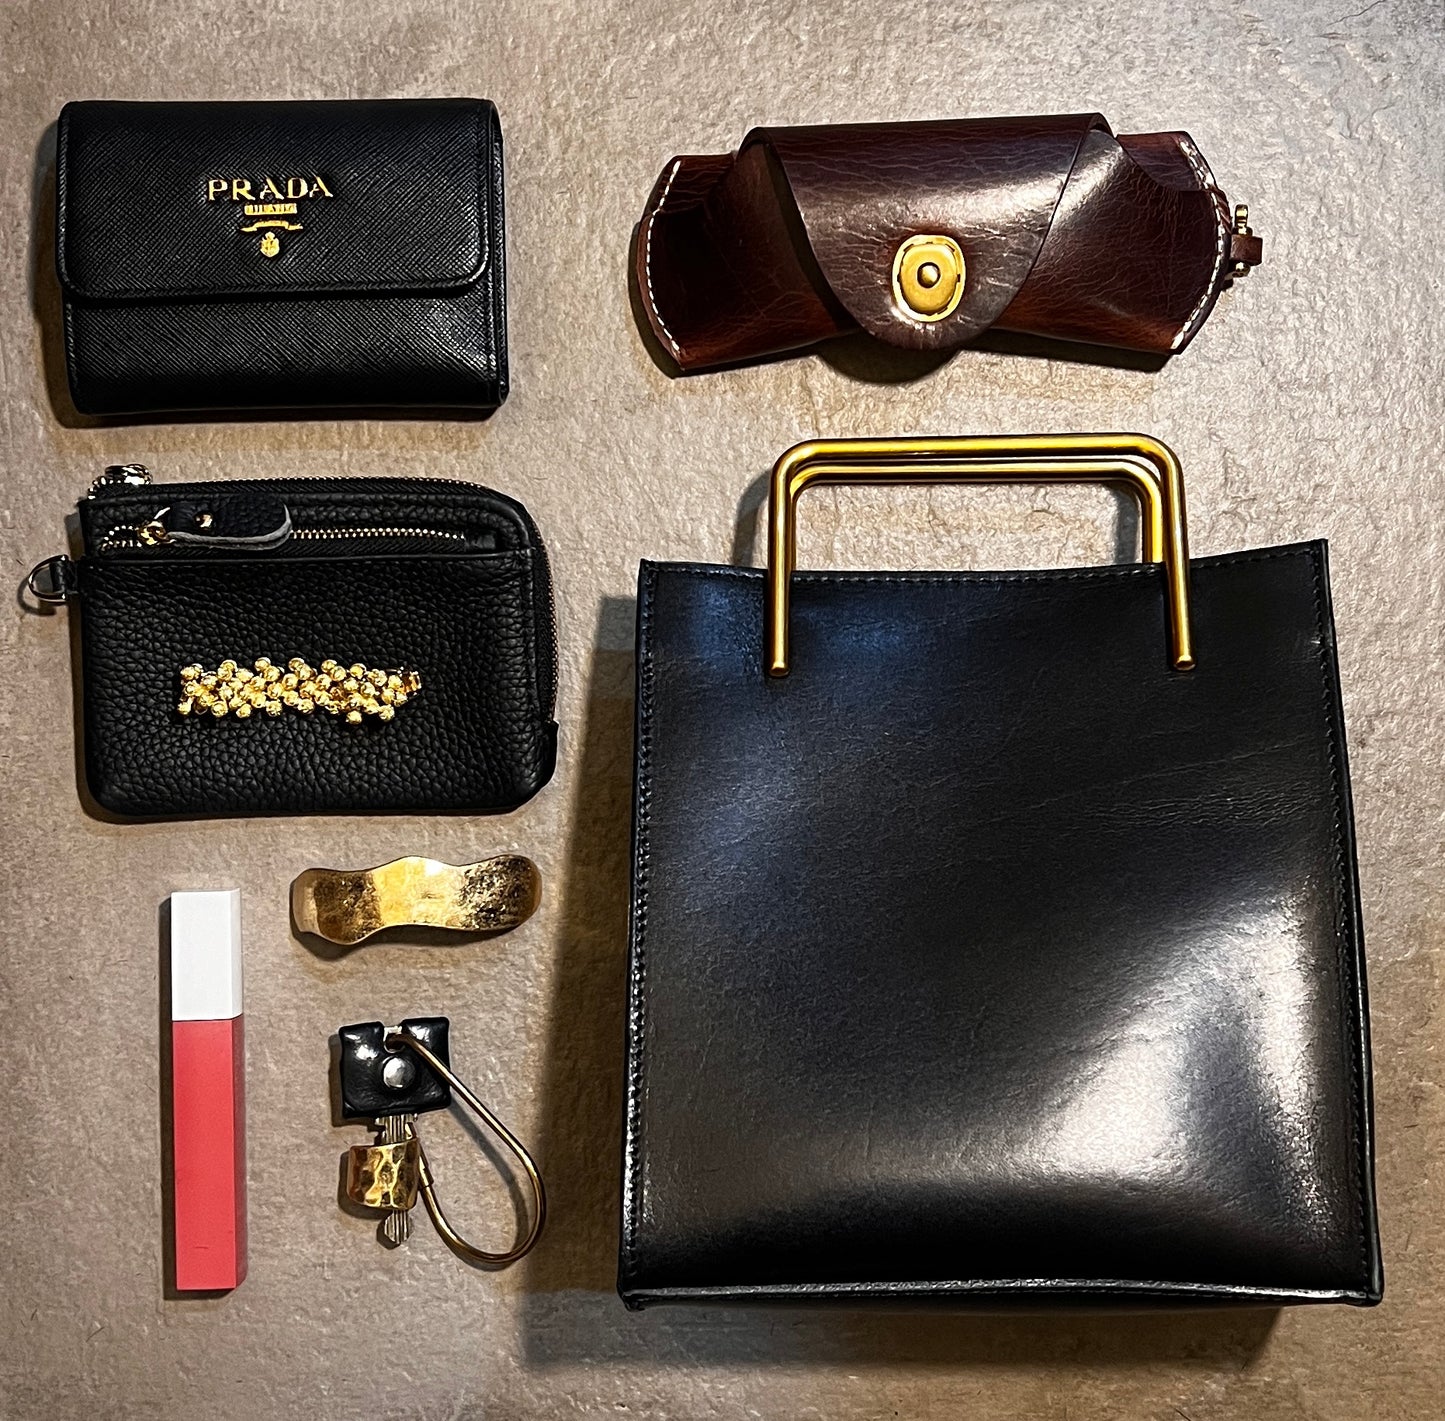 【予約商品】Black 人気No.1プレゼント付🎁【本革】gold handle Bag